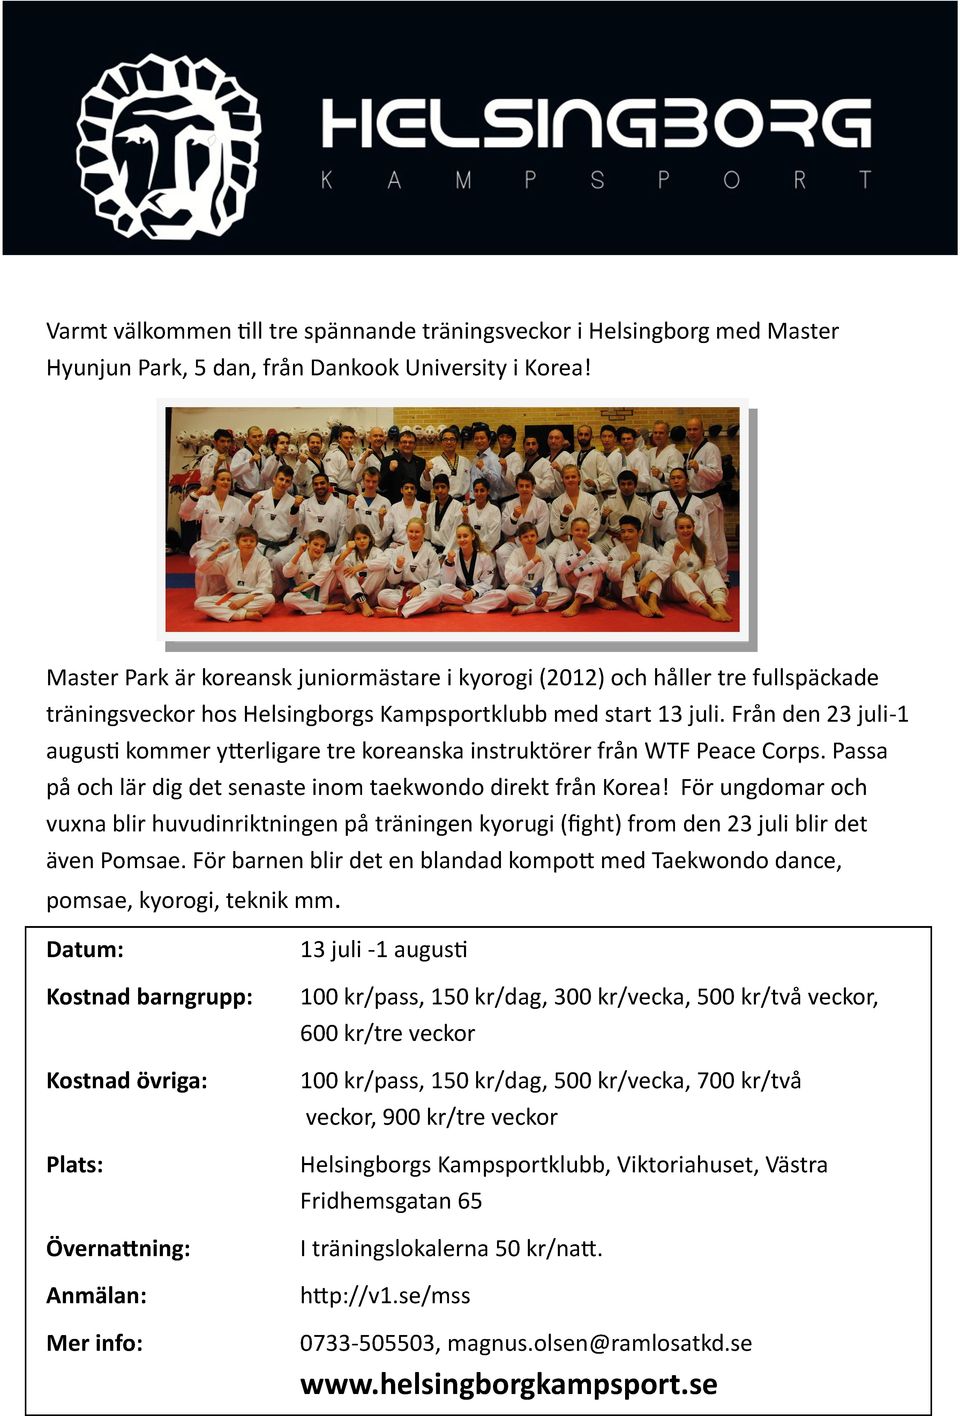 Från den 23 juli-1 augusti kommer ytterligare tre koreanska instruktörer från WTF Peace Corps. Passa på och lär dig det senaste inom taekwondo direkt från Korea!